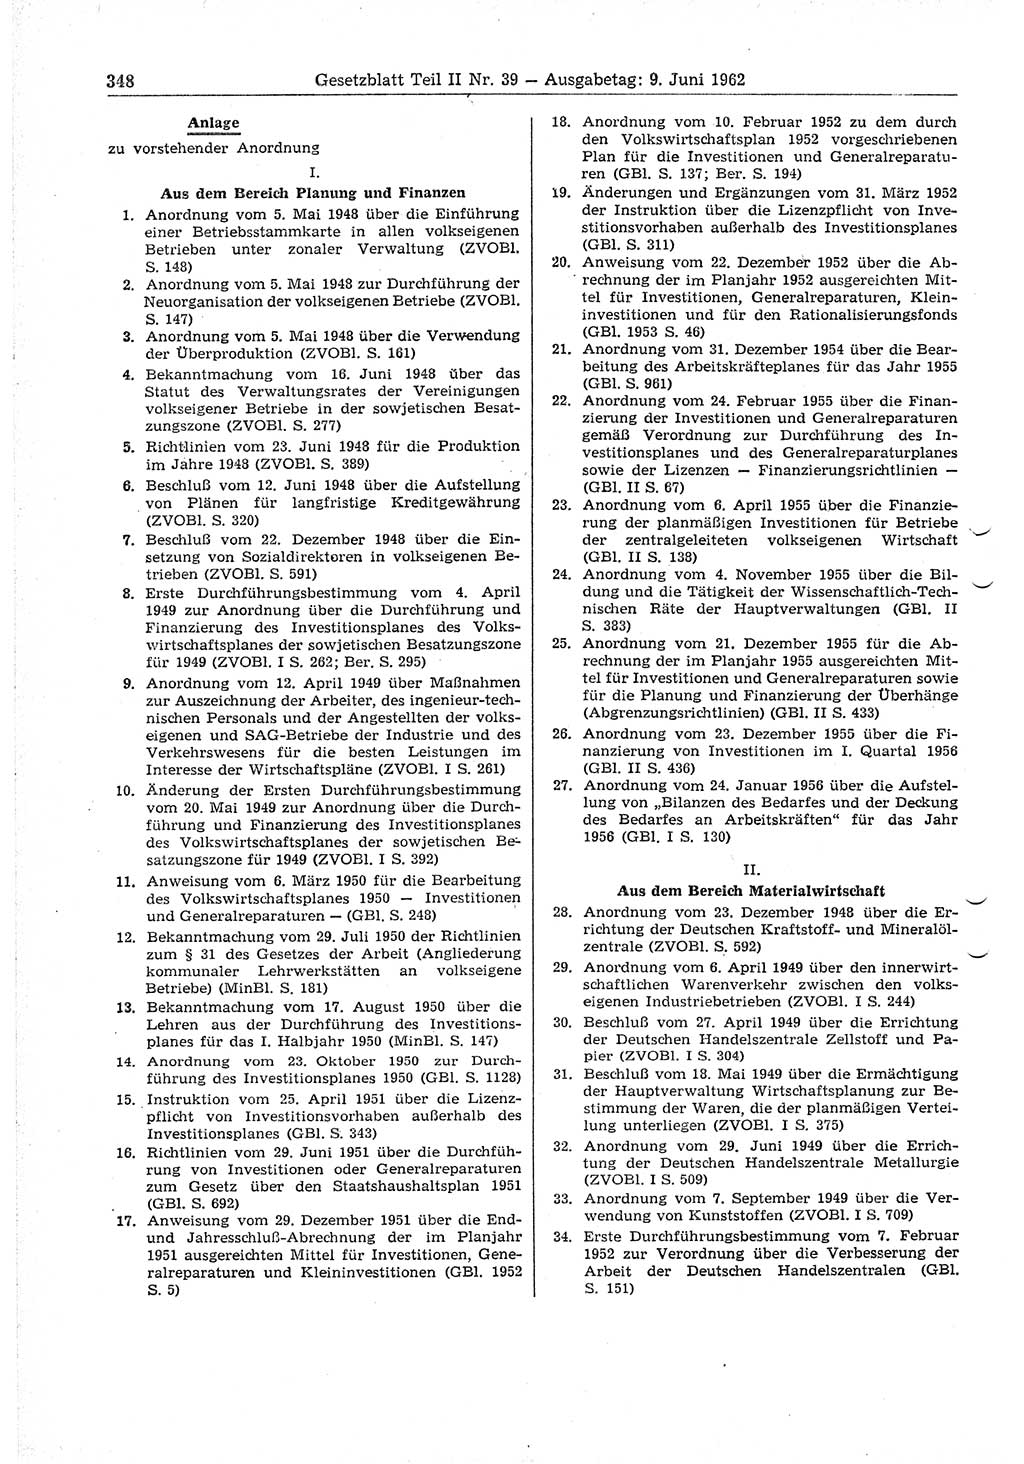 Gesetzblatt (GBl.) der Deutschen Demokratischen Republik (DDR) Teil ⅠⅠ 1962, Seite 348 (GBl. DDR ⅠⅠ 1962, S. 348)